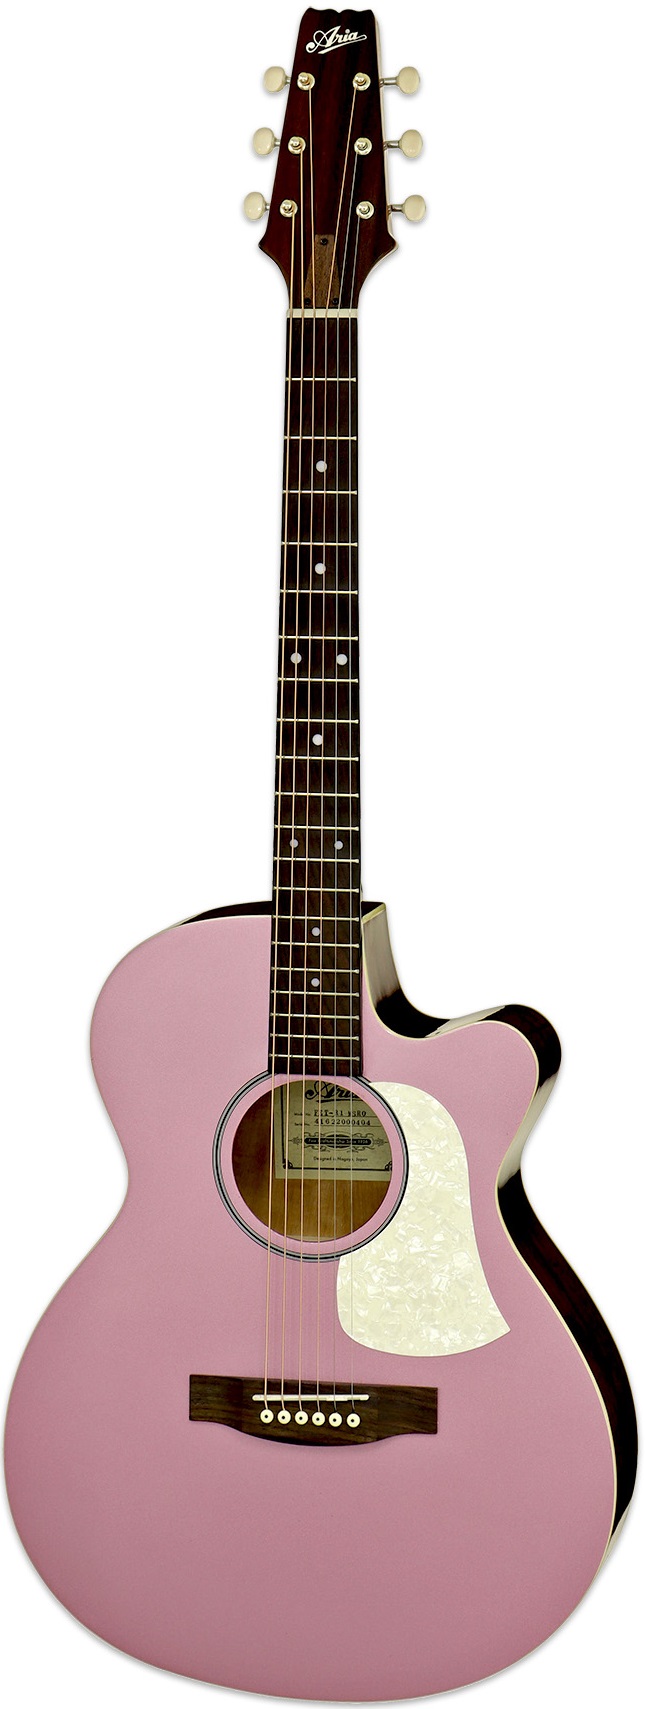 Электроакустические гитары Aria FET-R1 MSRO электрическая гитара разделяет металлическую перемычку через пластину втулки втулки кузова для замены гитары